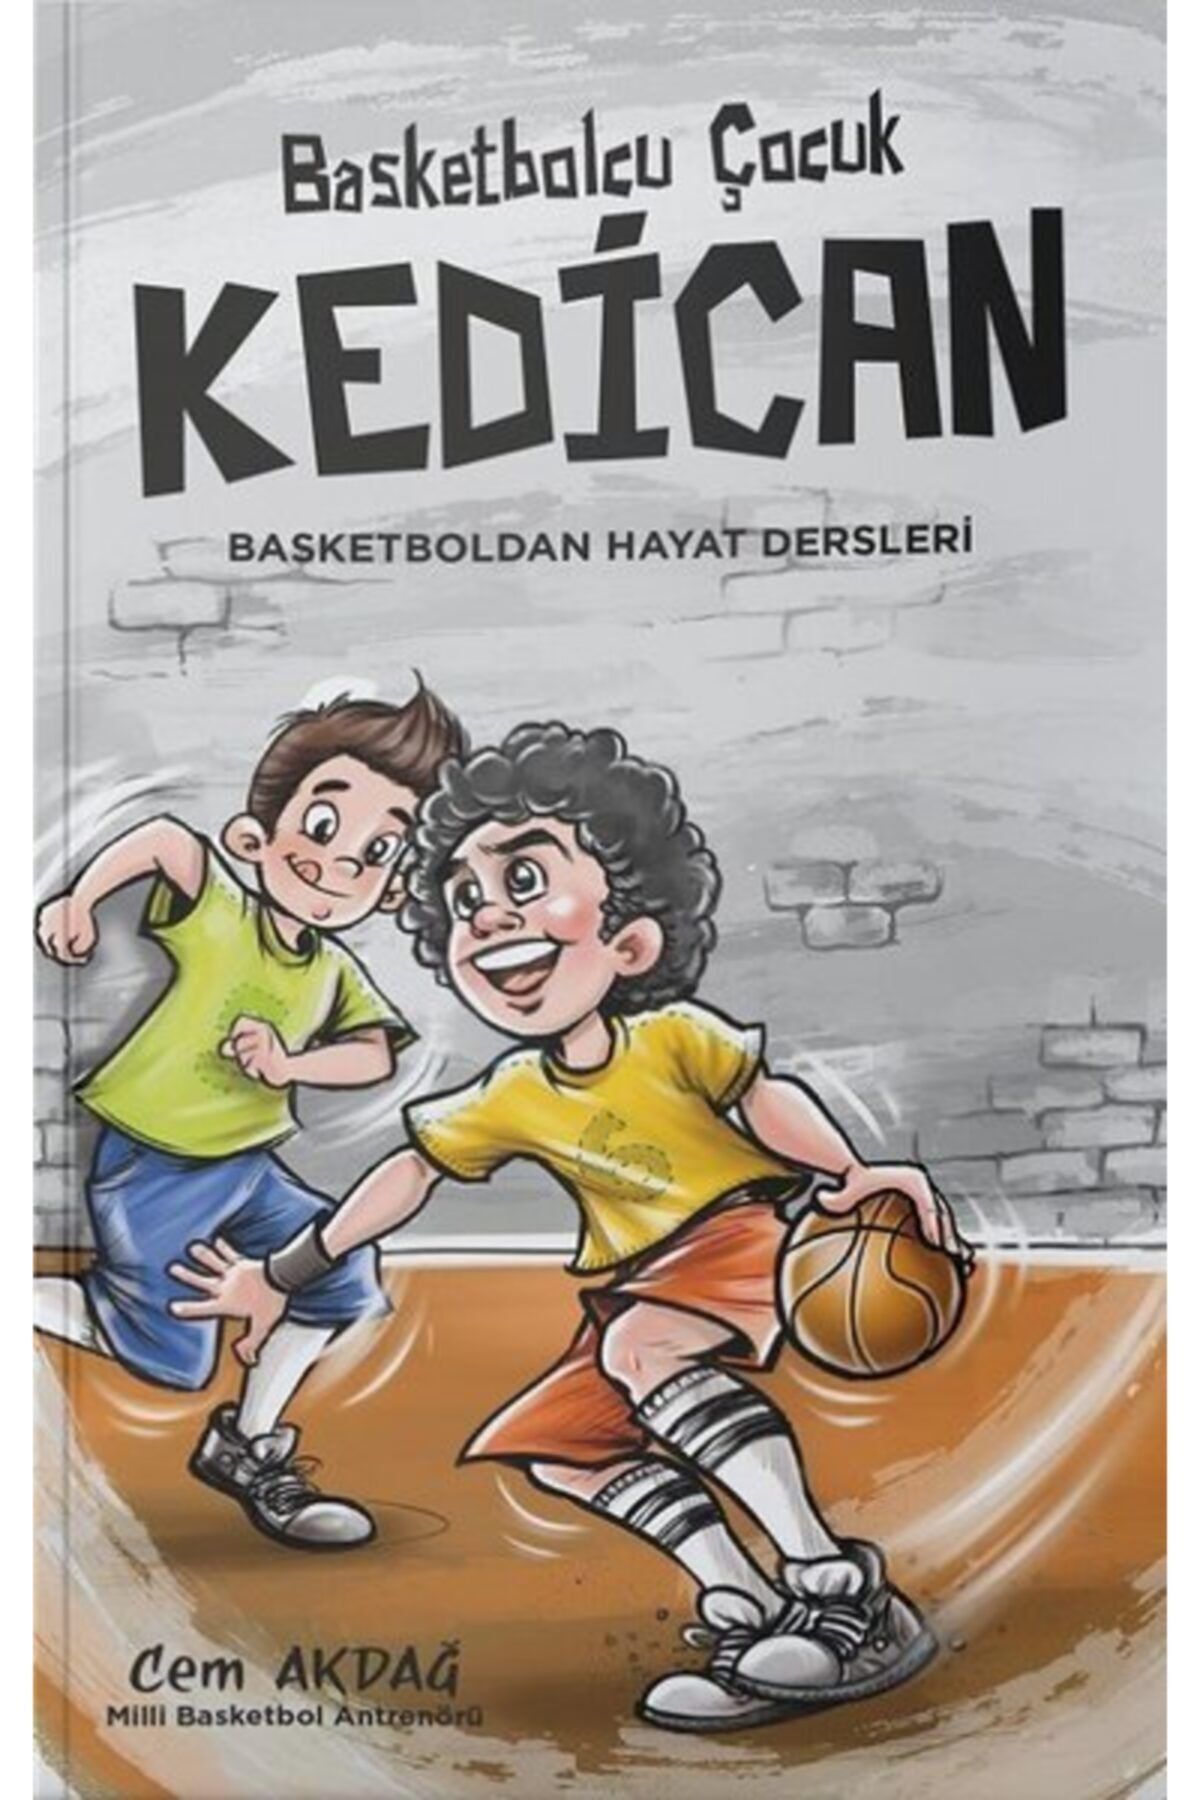 Genel Markalar Basketbolcu Çocuk Kedican Basketboldan Hayat Dersleri